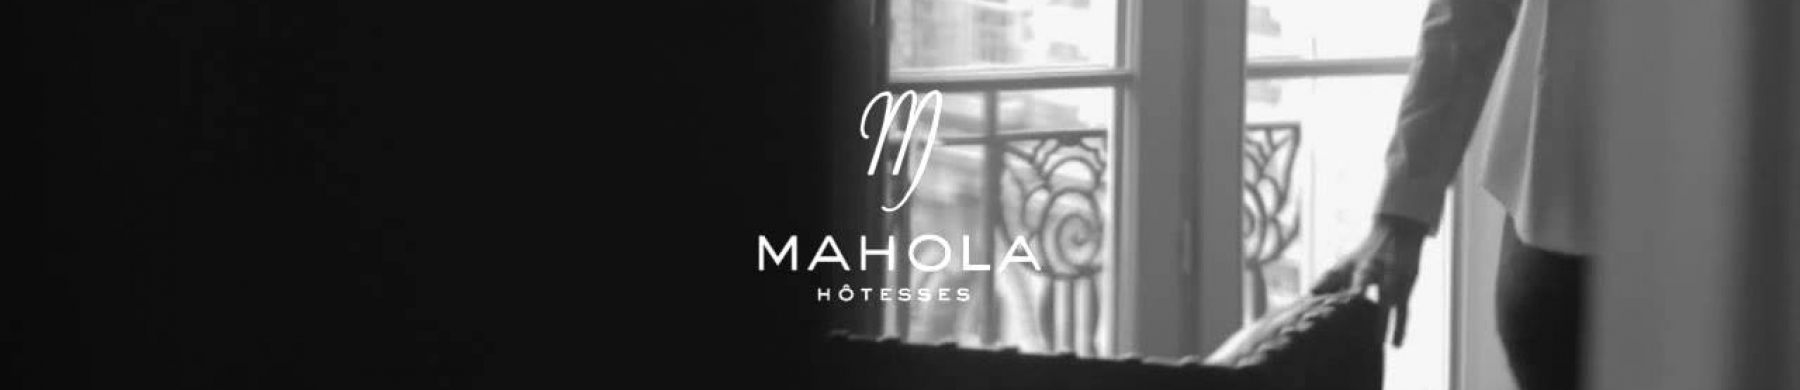 Bannière Mahola Hôtesses